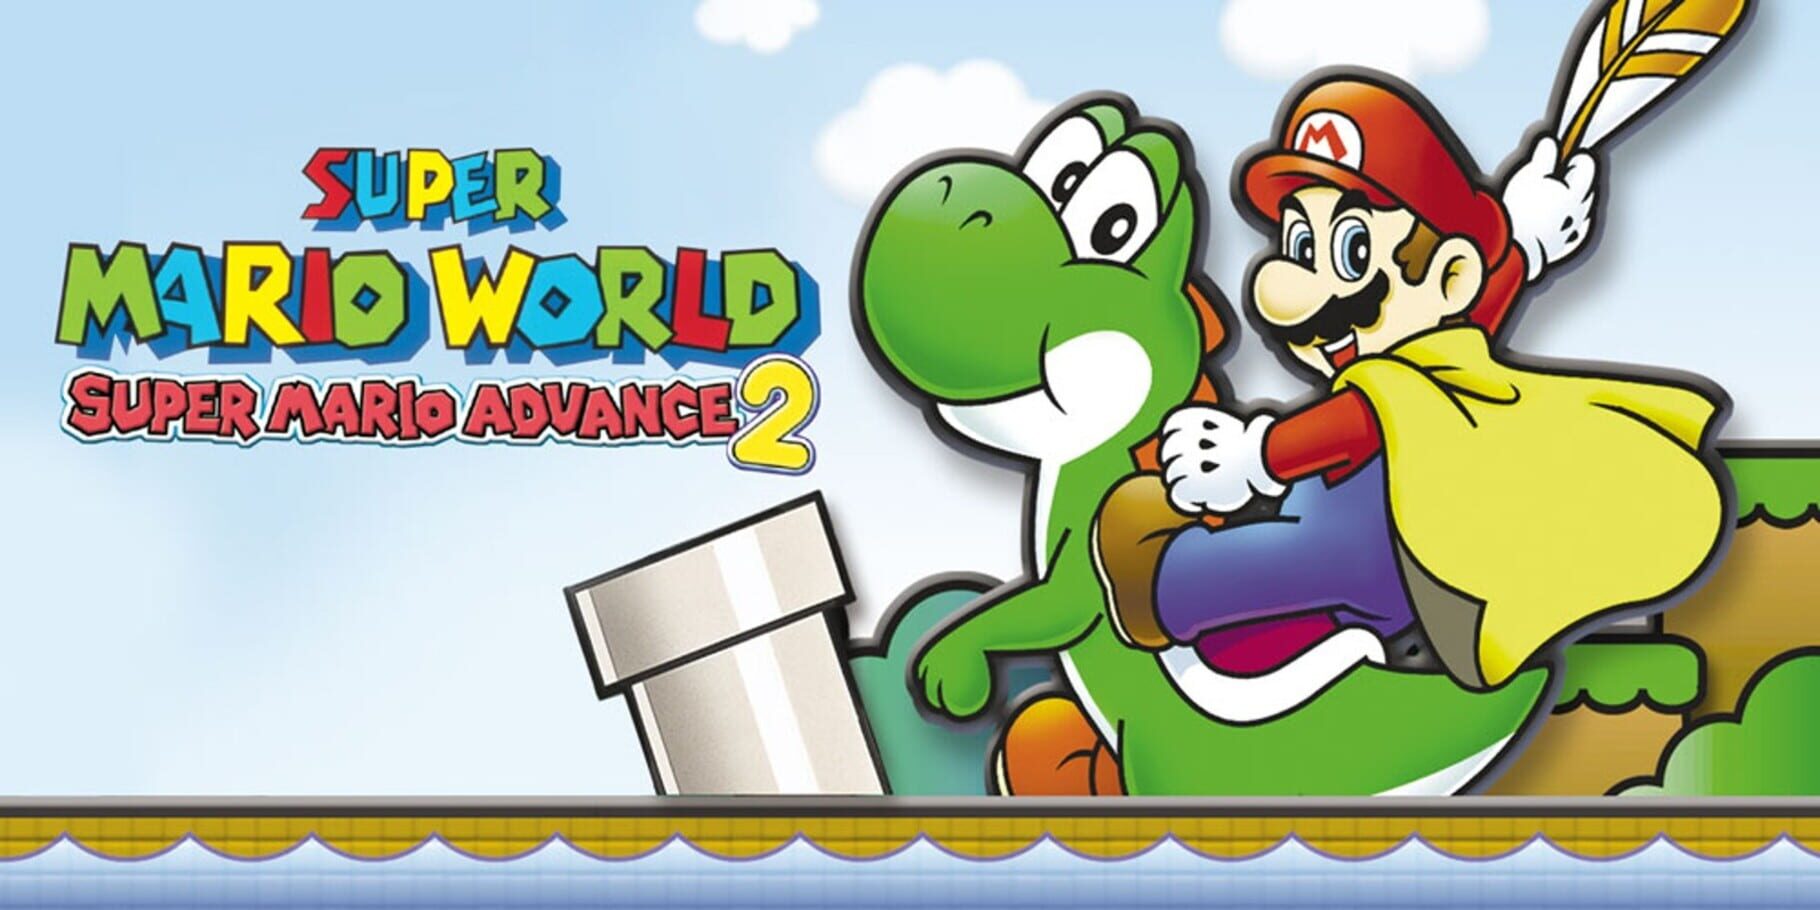 Arte - Super Mario World: Super Mario Advance 2